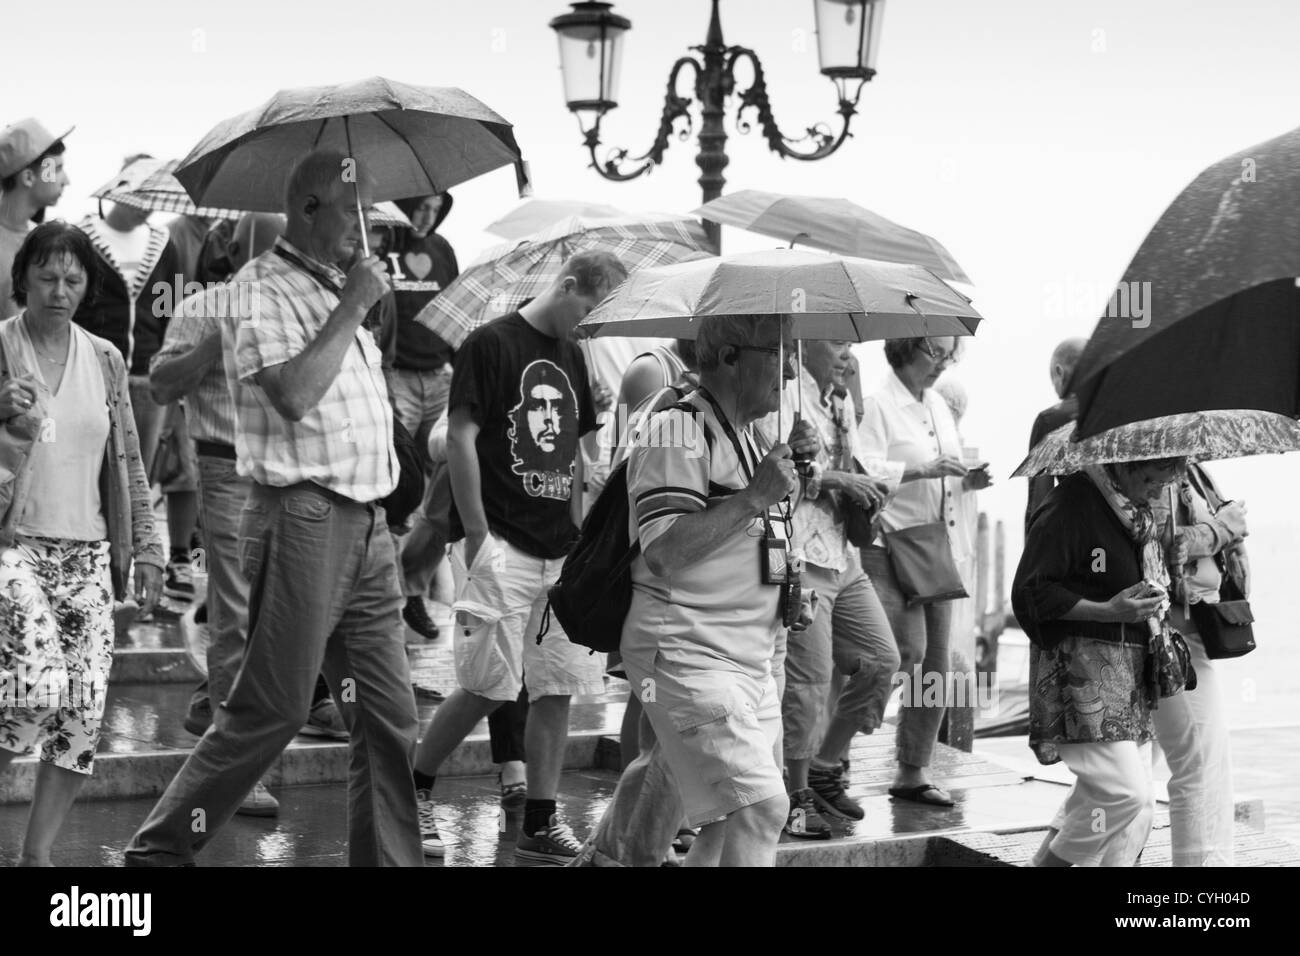 Des foules de touristes dans les fortes pluies. Front de Venise. Italie Banque D'Images